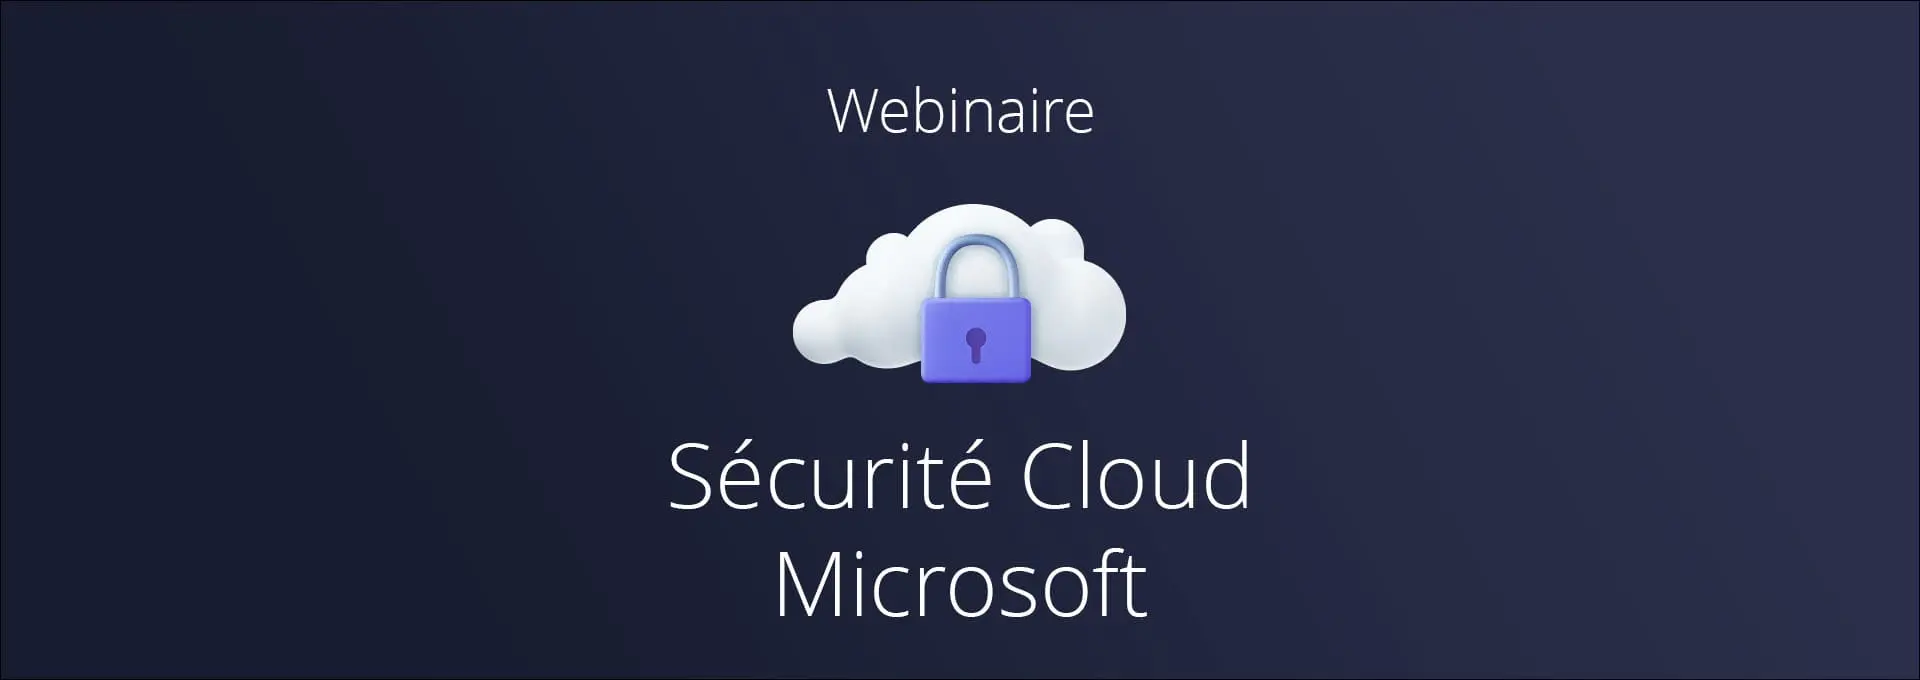 Actualités Webinaires - La sécurité du cloud Microsoft